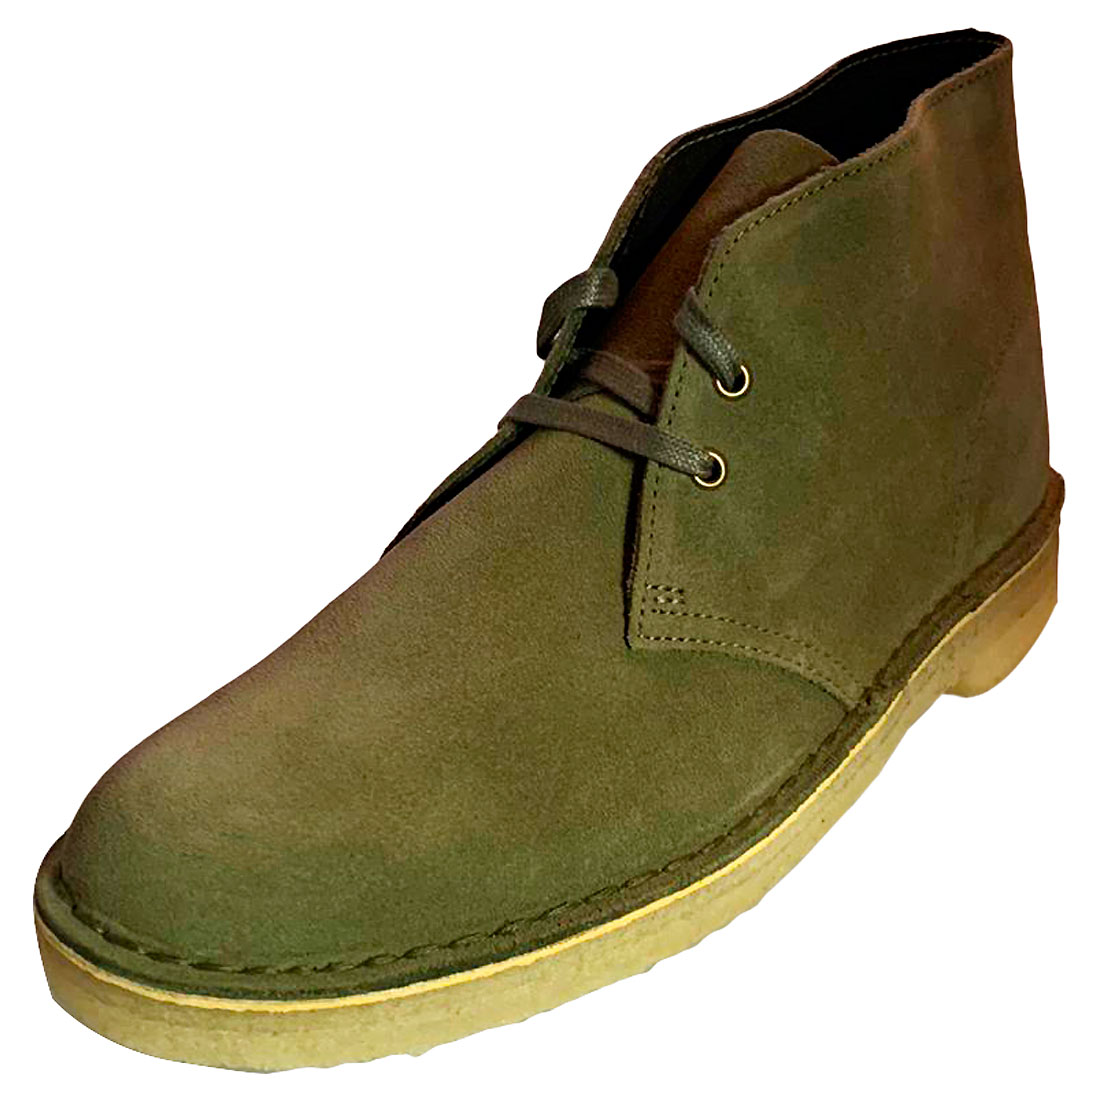 clarks originals men's desert boot